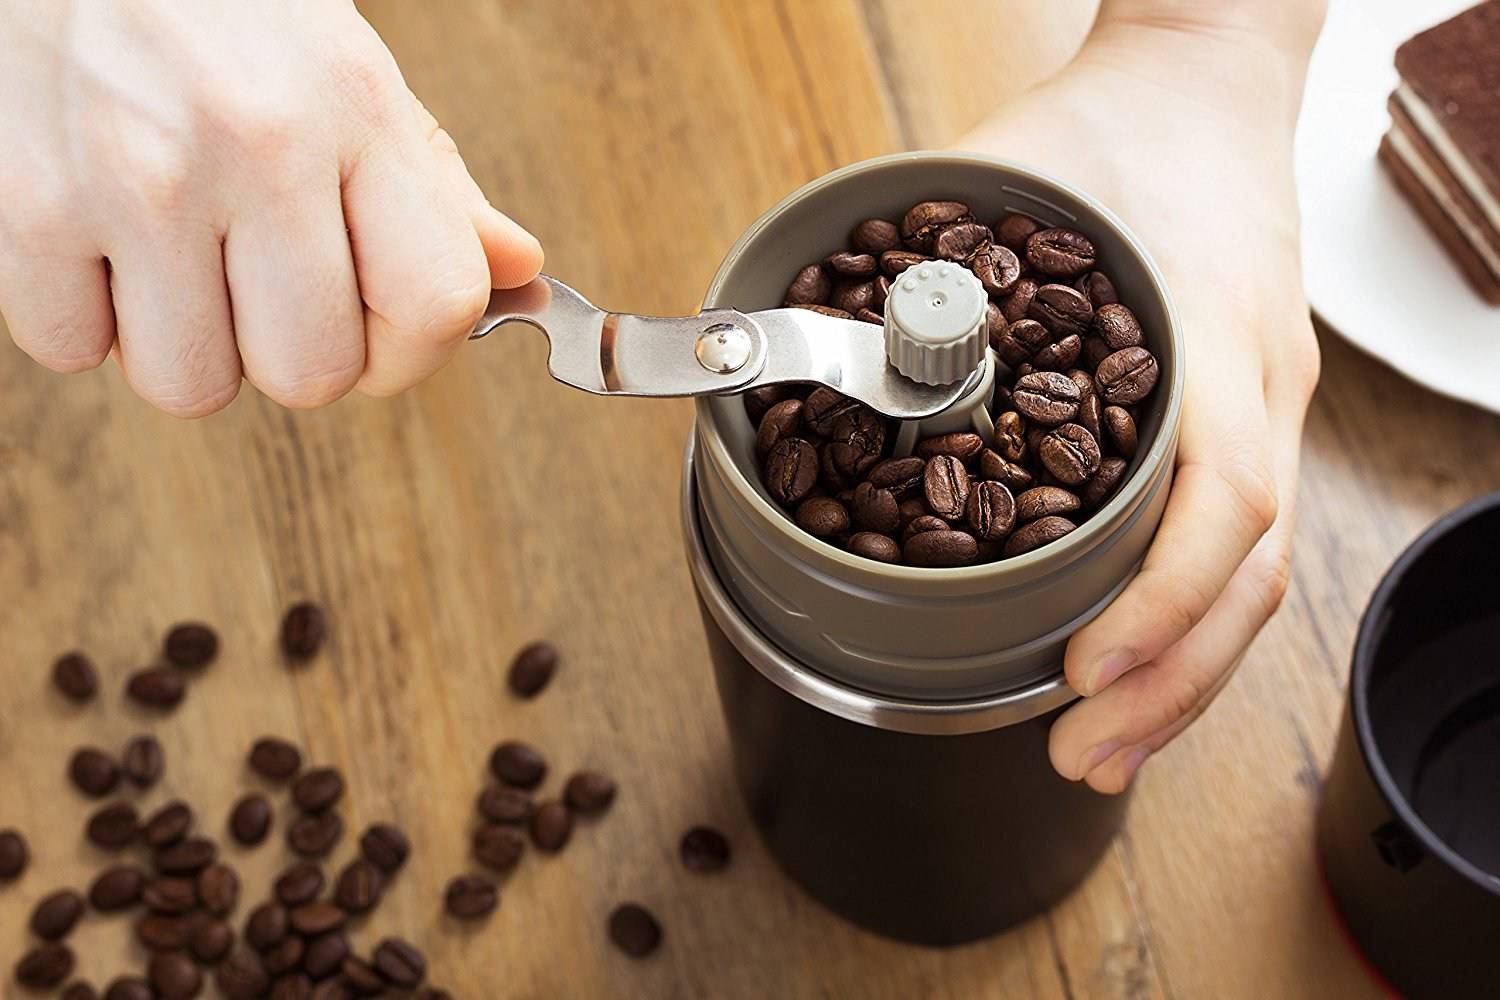 Можно ли молоть кофе в блендере: использование вместо кофемолки